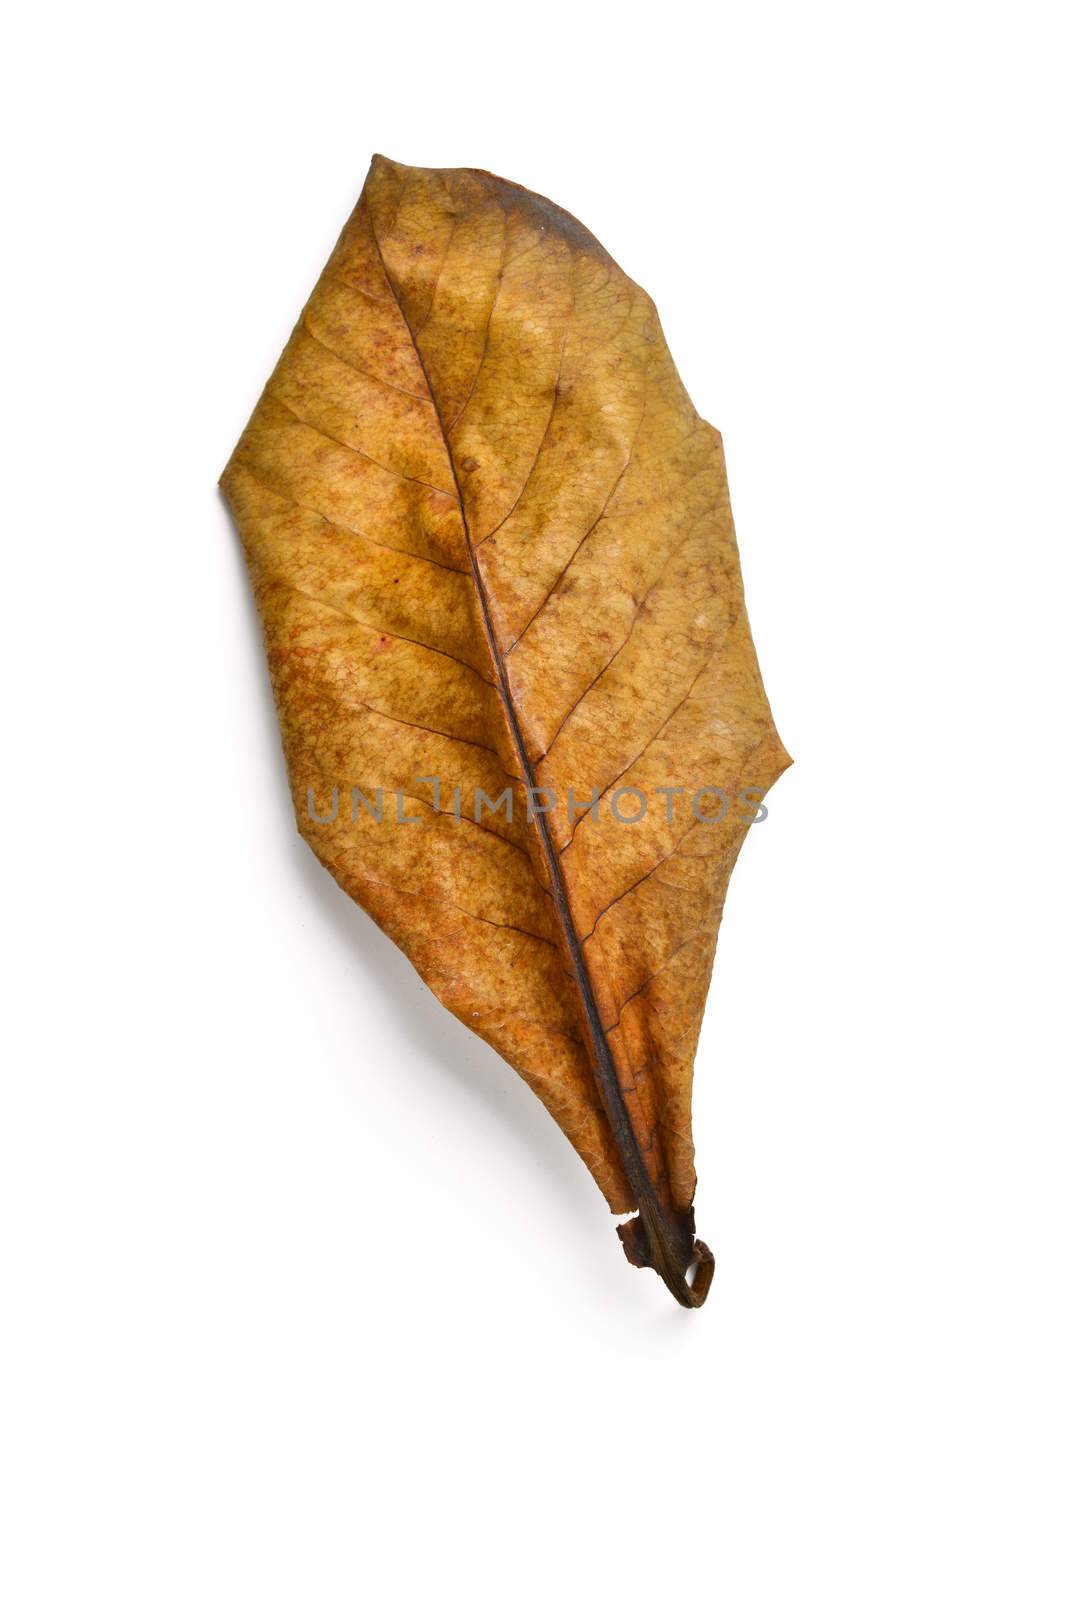 dry terminalia catappa leaf by antpkr